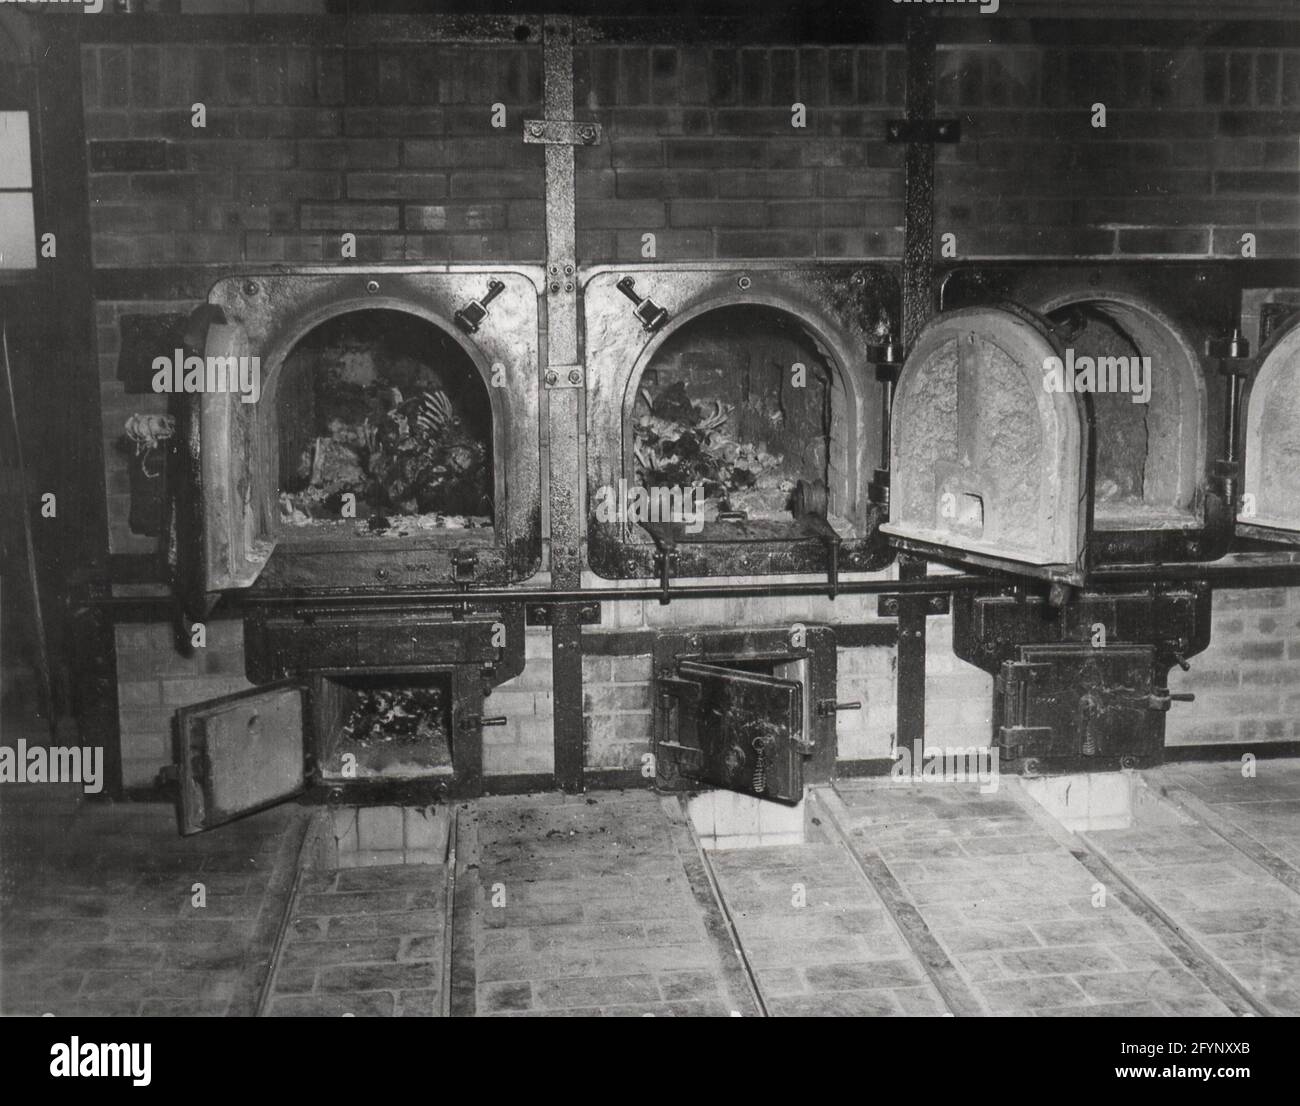 Guerra mondiale secondo la seconda guerra mondiale Olocausto crumatorio atrocità al campo di concentramento di Buchenwald preso da PFC. Chichersky del 3° esercito degli Stati Uniti, 14 aprile 1945 cremazione di ebrei da parte dei nazisti Foto Stock